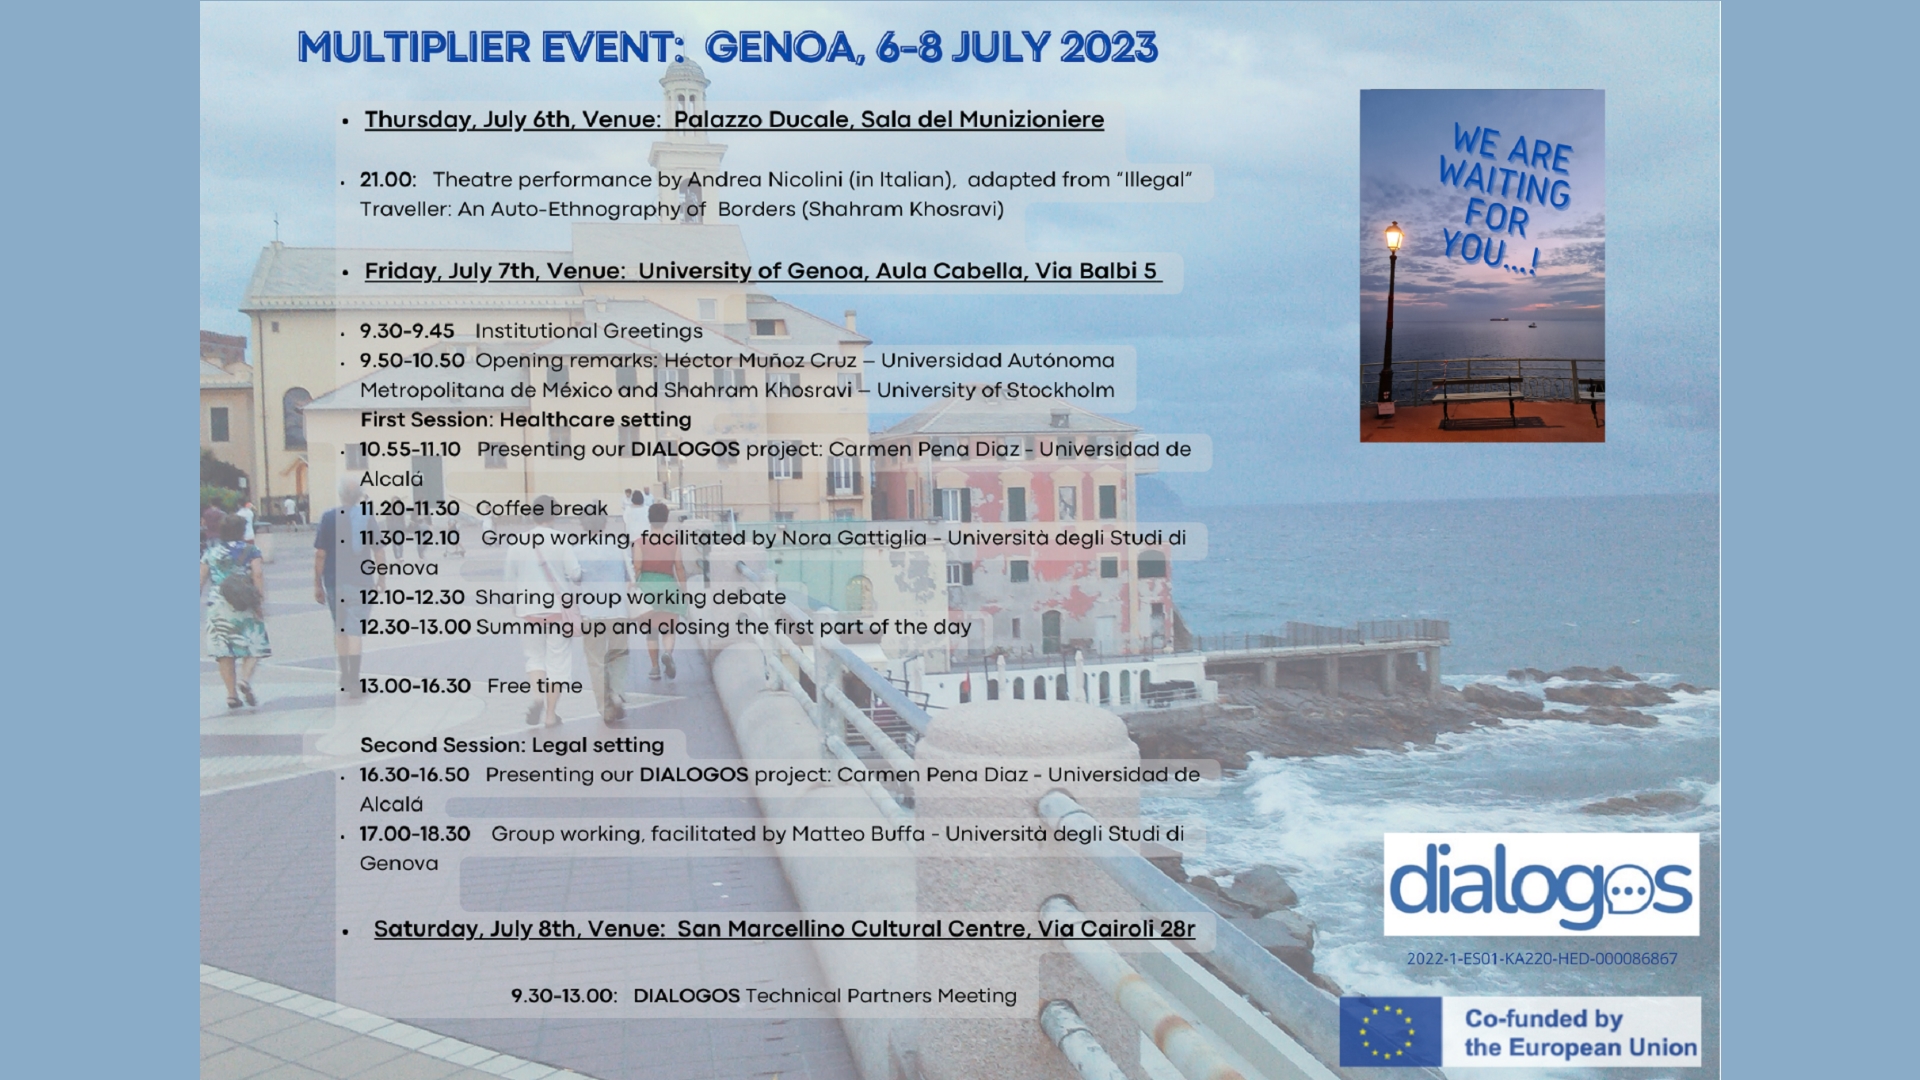 Programma MULTIPLIER EVENT GENOA, 6-8 JULY 2023